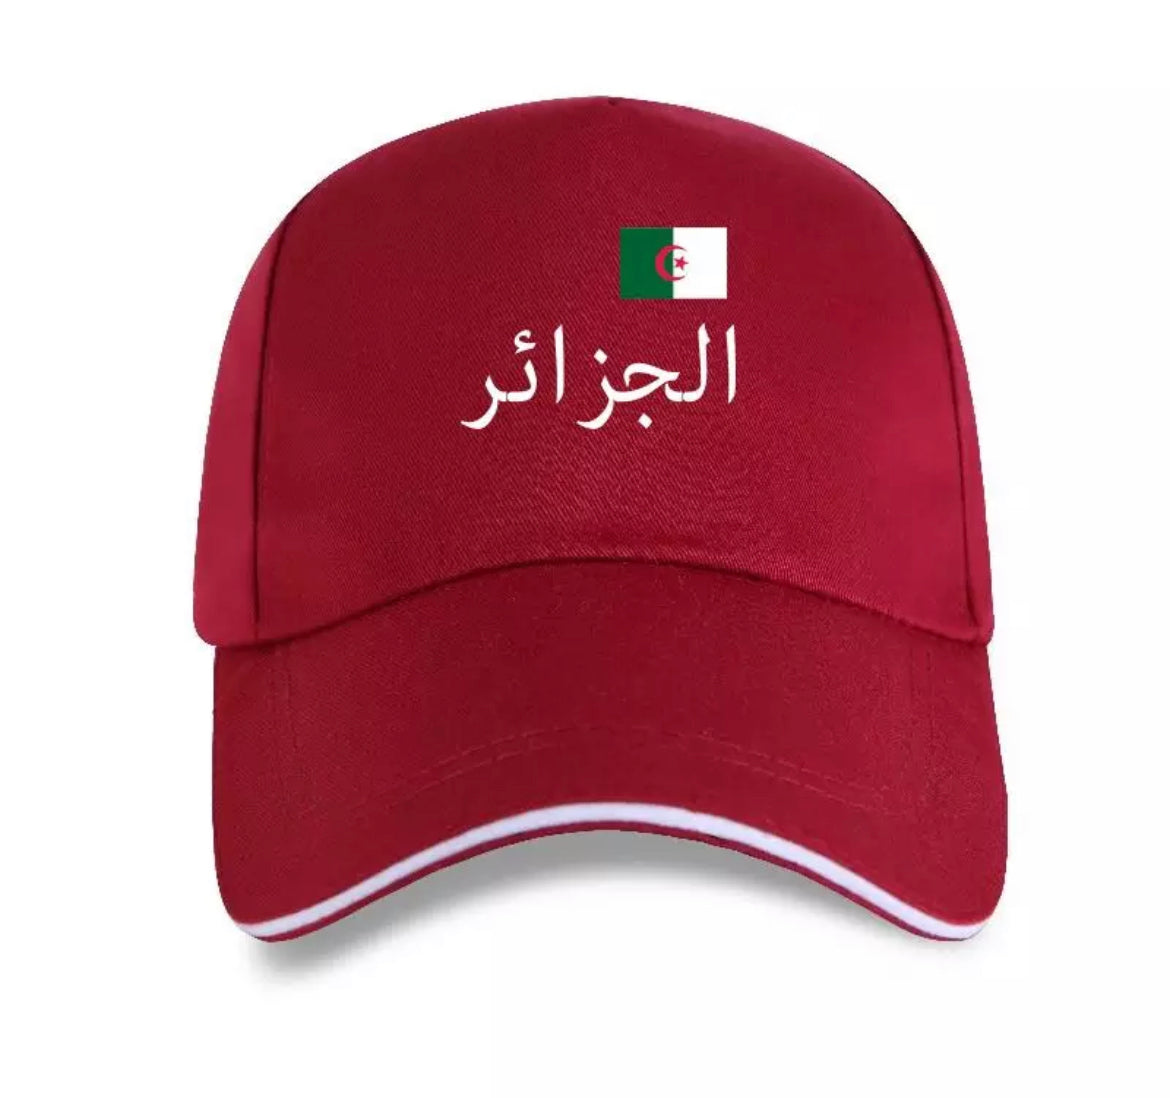 Algeria 2 star cap